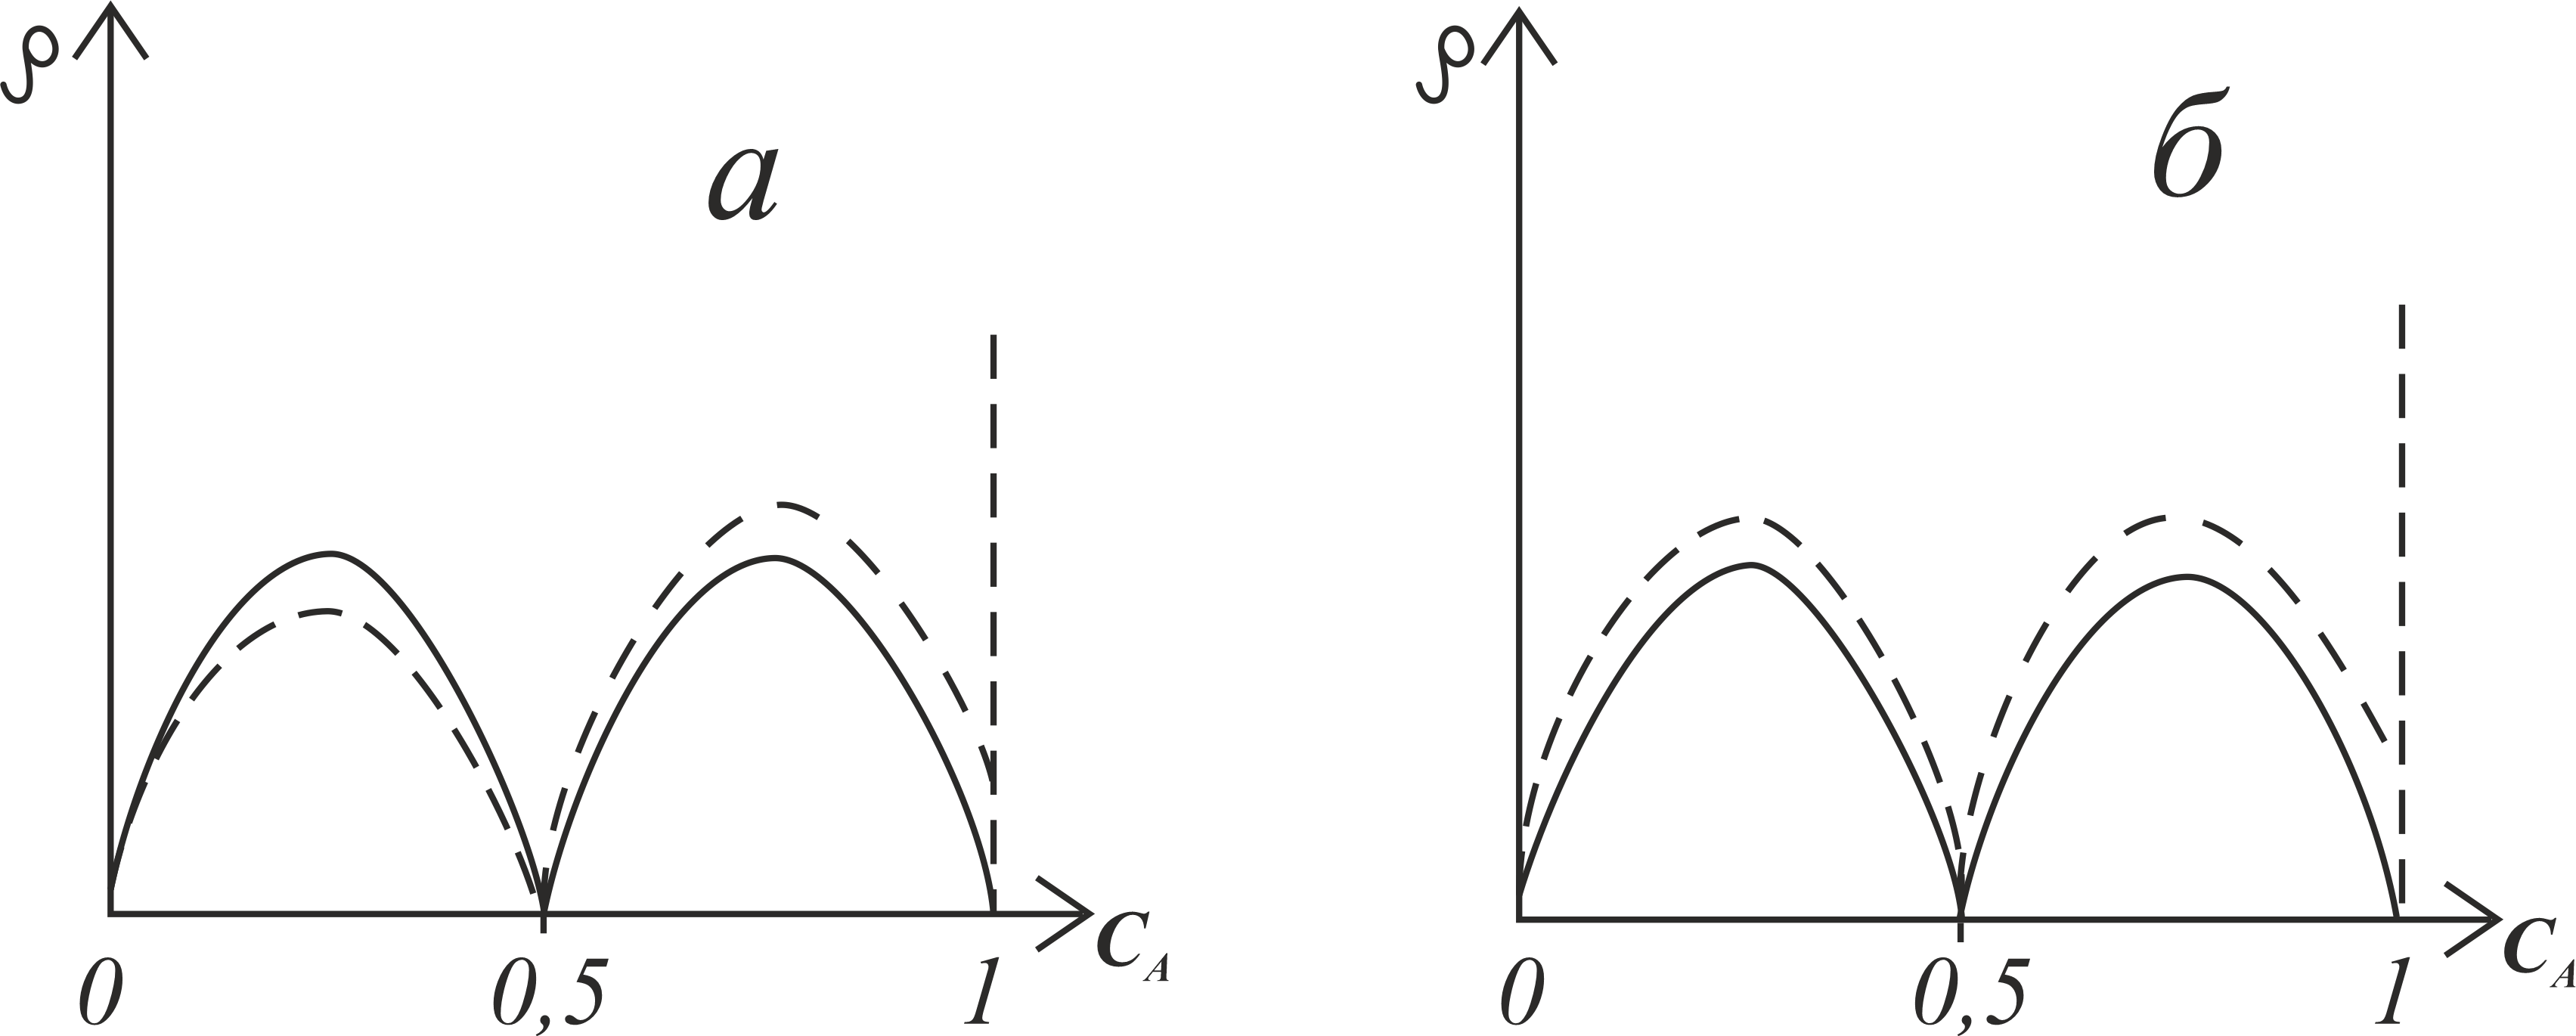 Концентрационные зависимости остаточного электросопротивления упорядоченного сплава с вакансиями (пунктирная линия) и без вакансий (сплошная линия) при максимальном порядке 